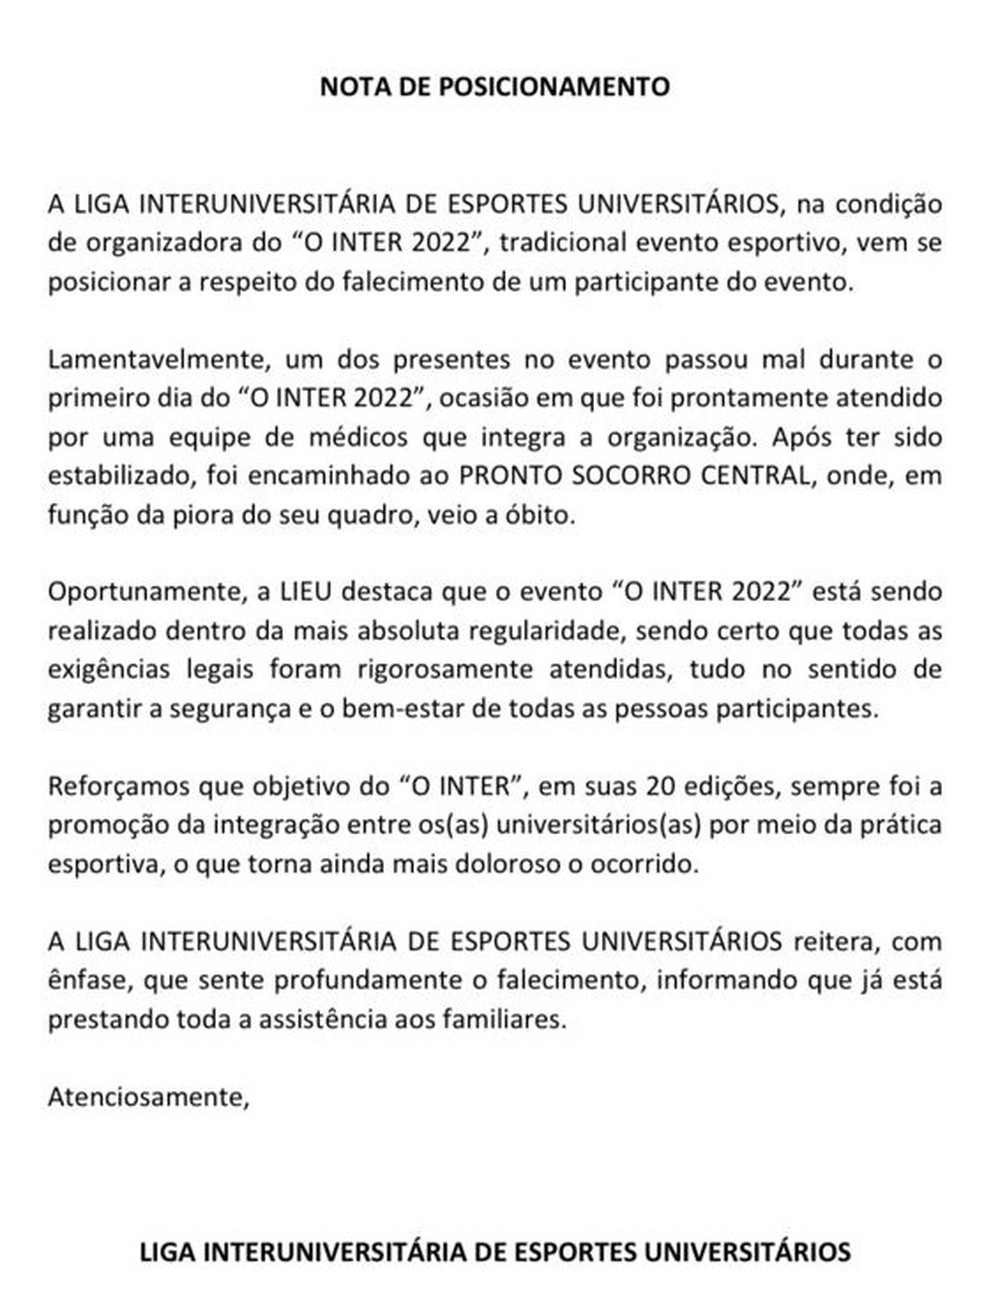 Maior evento de games América Latina destaca jogos para a área da saúde -  Jornal O Globo